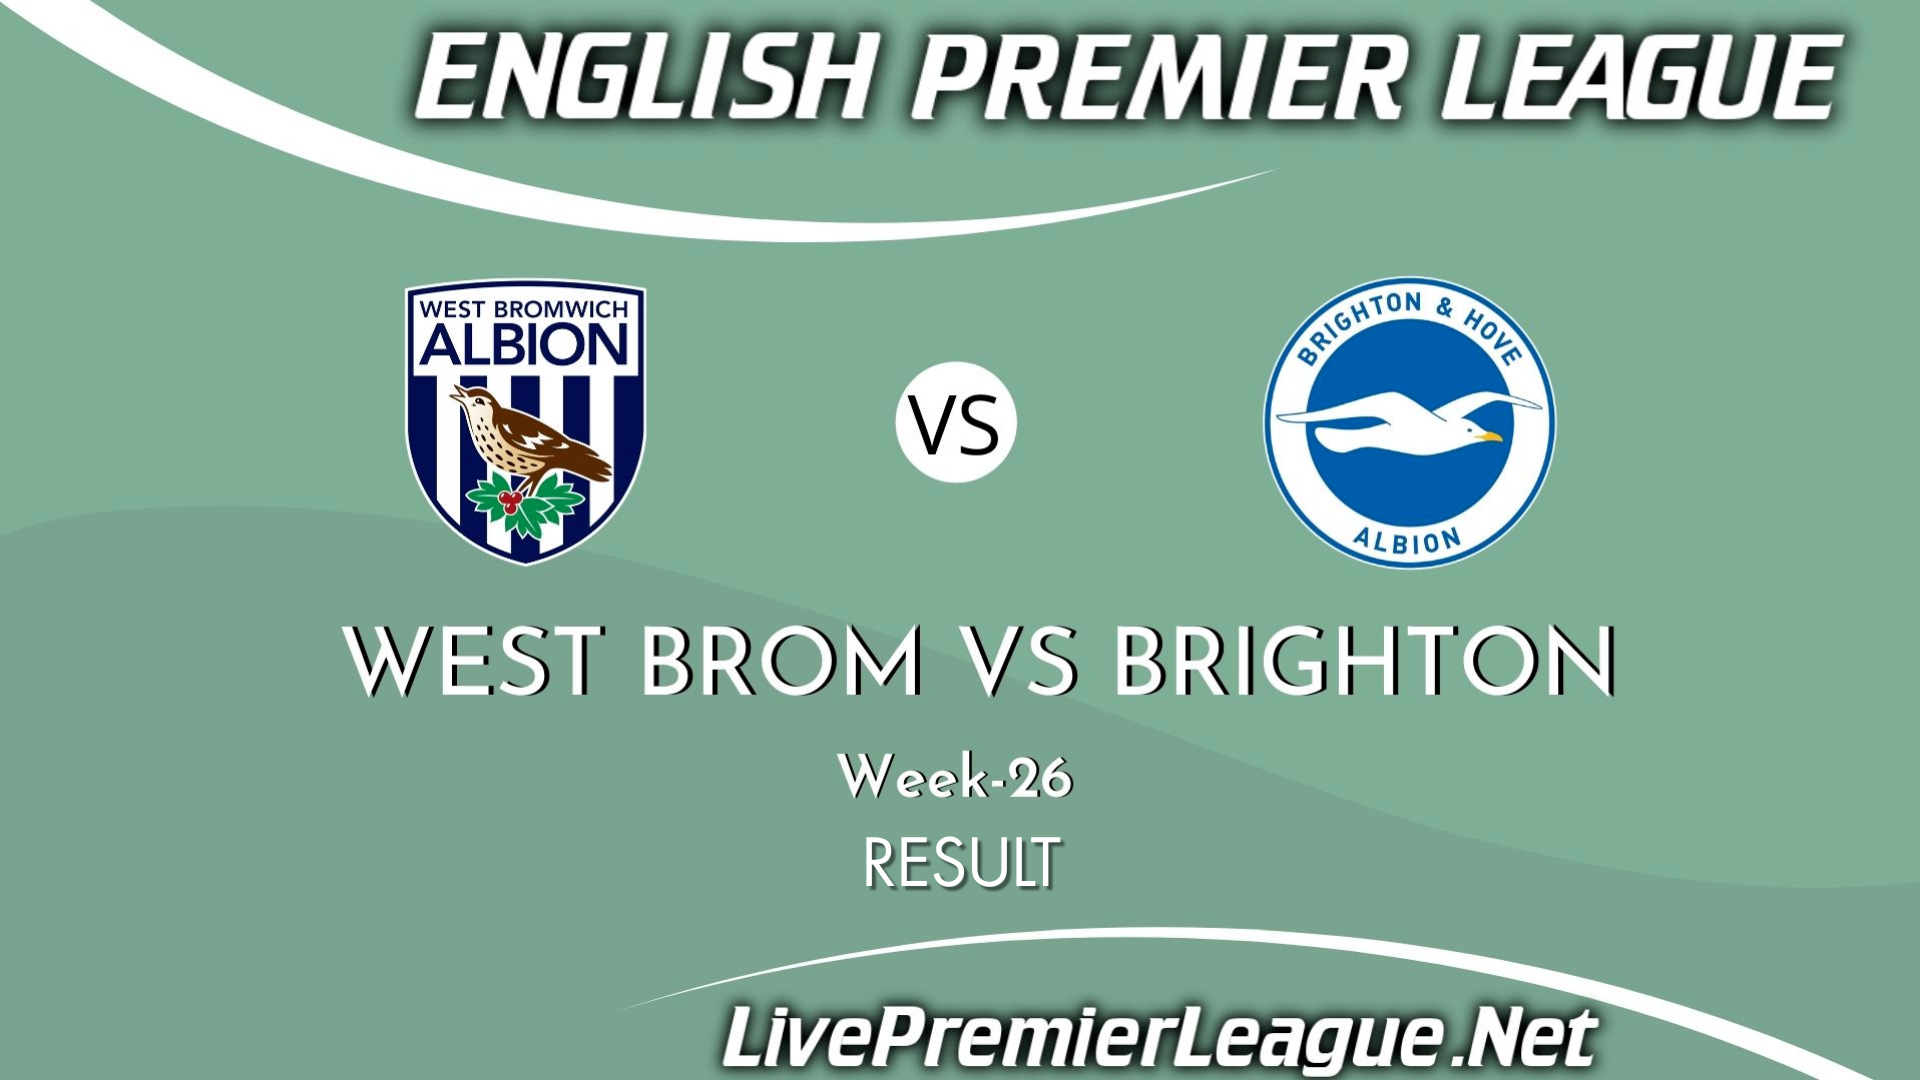 West Brom Vs Brighton | Result 2021 EPL Week 26